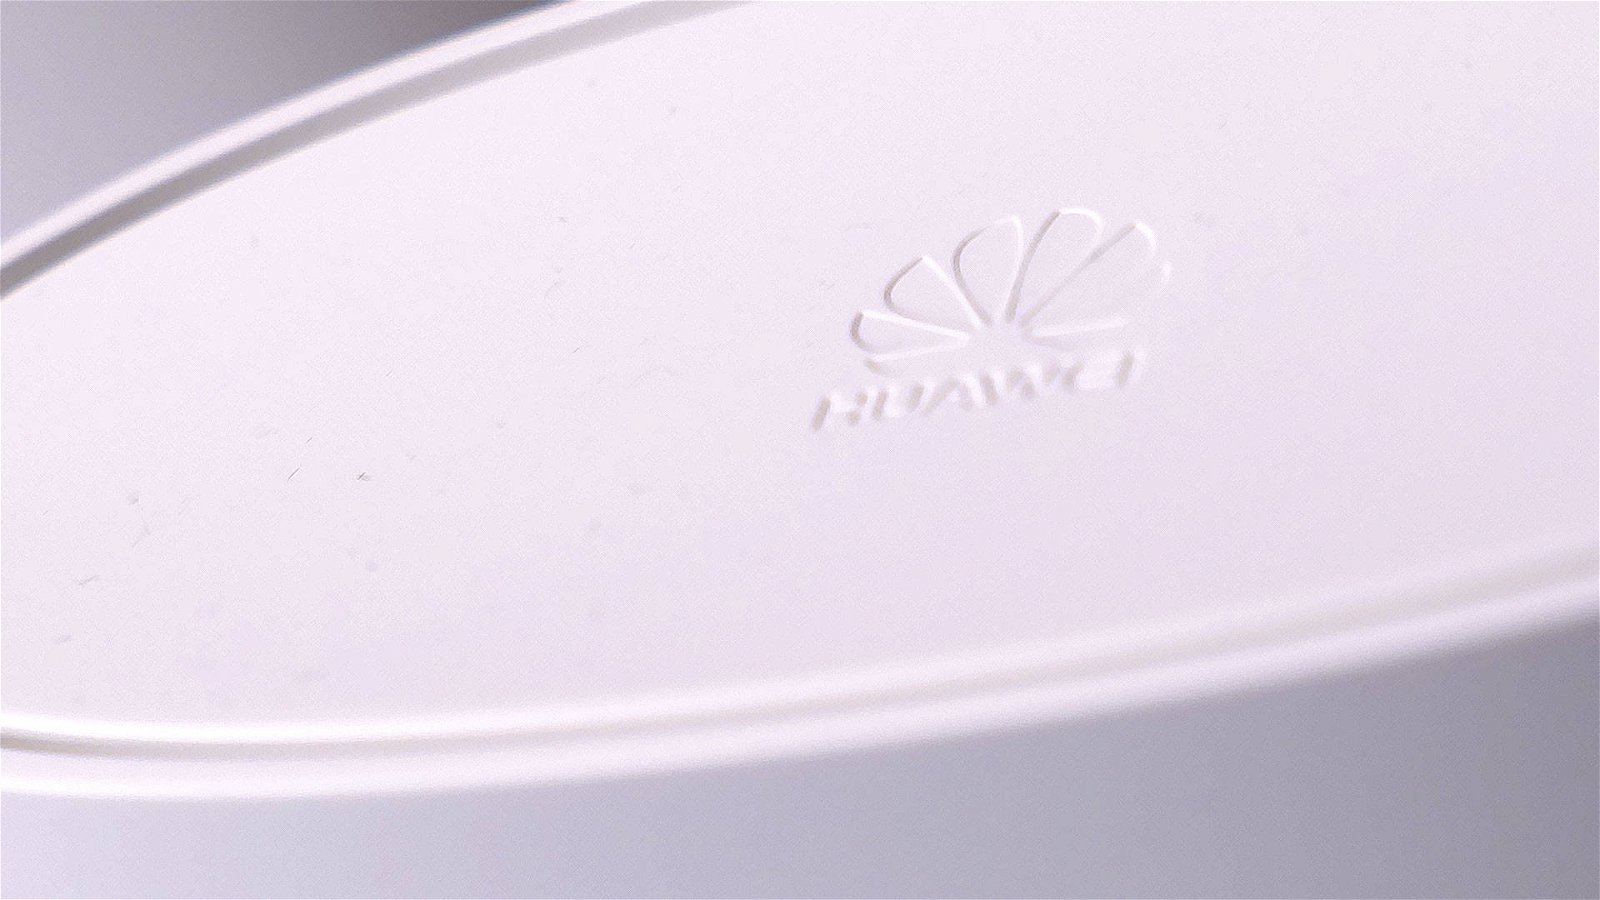 Immagine di Huawei avverte gli USA: vi farete male da soli bloccandoci. Rinunciare all'eccellenza tecnologica 5G avrà un costo